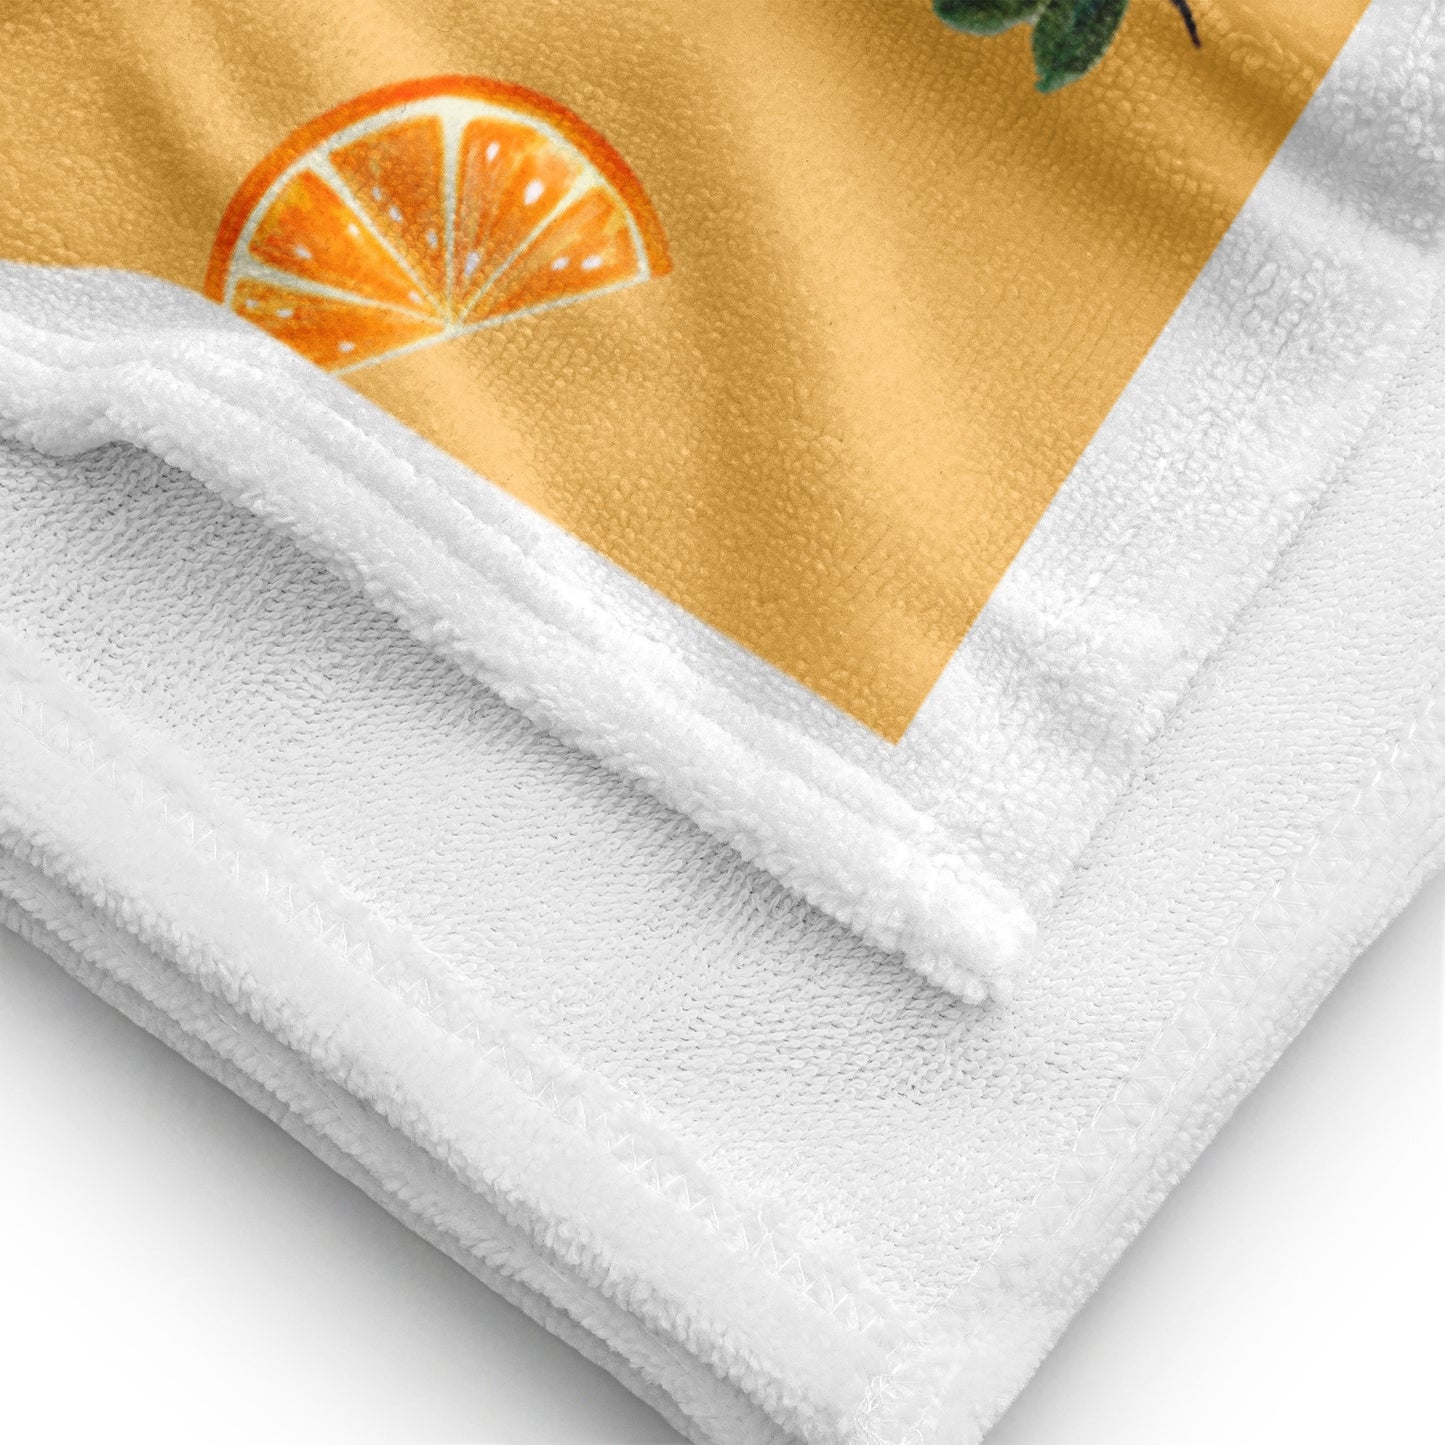 ALGARVE SUN ORANGE beach towel